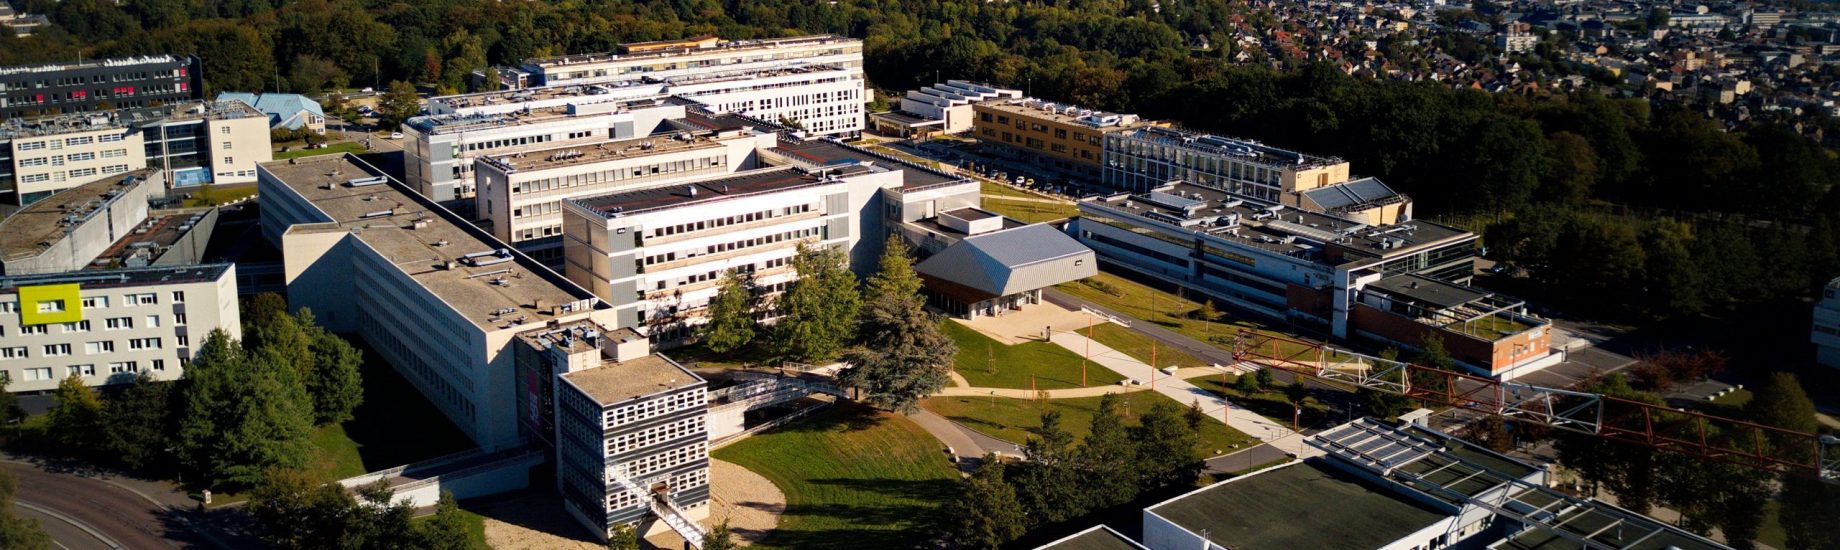 Vue aérienne du campus de Mont-Saint-Aignan